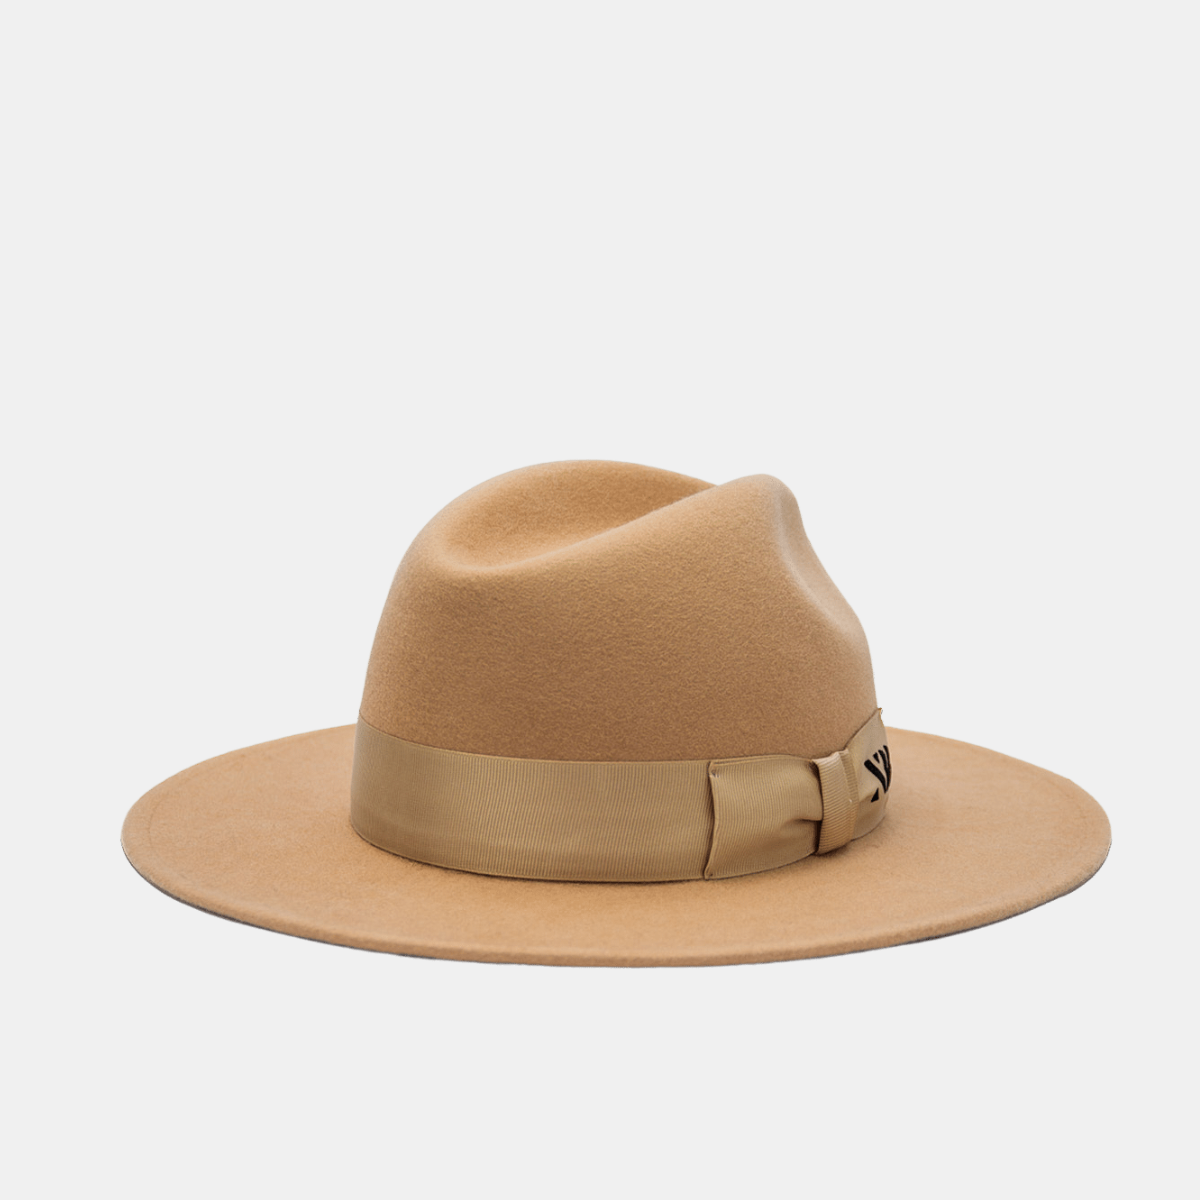 NTHIRTYTHREE - N33 - Fedora Felt Hat - Rancher Desert Sand - artisan-made handmade in Europe wide brim. Made in Wasaw. Artisan made fedora hats. Sustainable Headwear, Luxury Hats